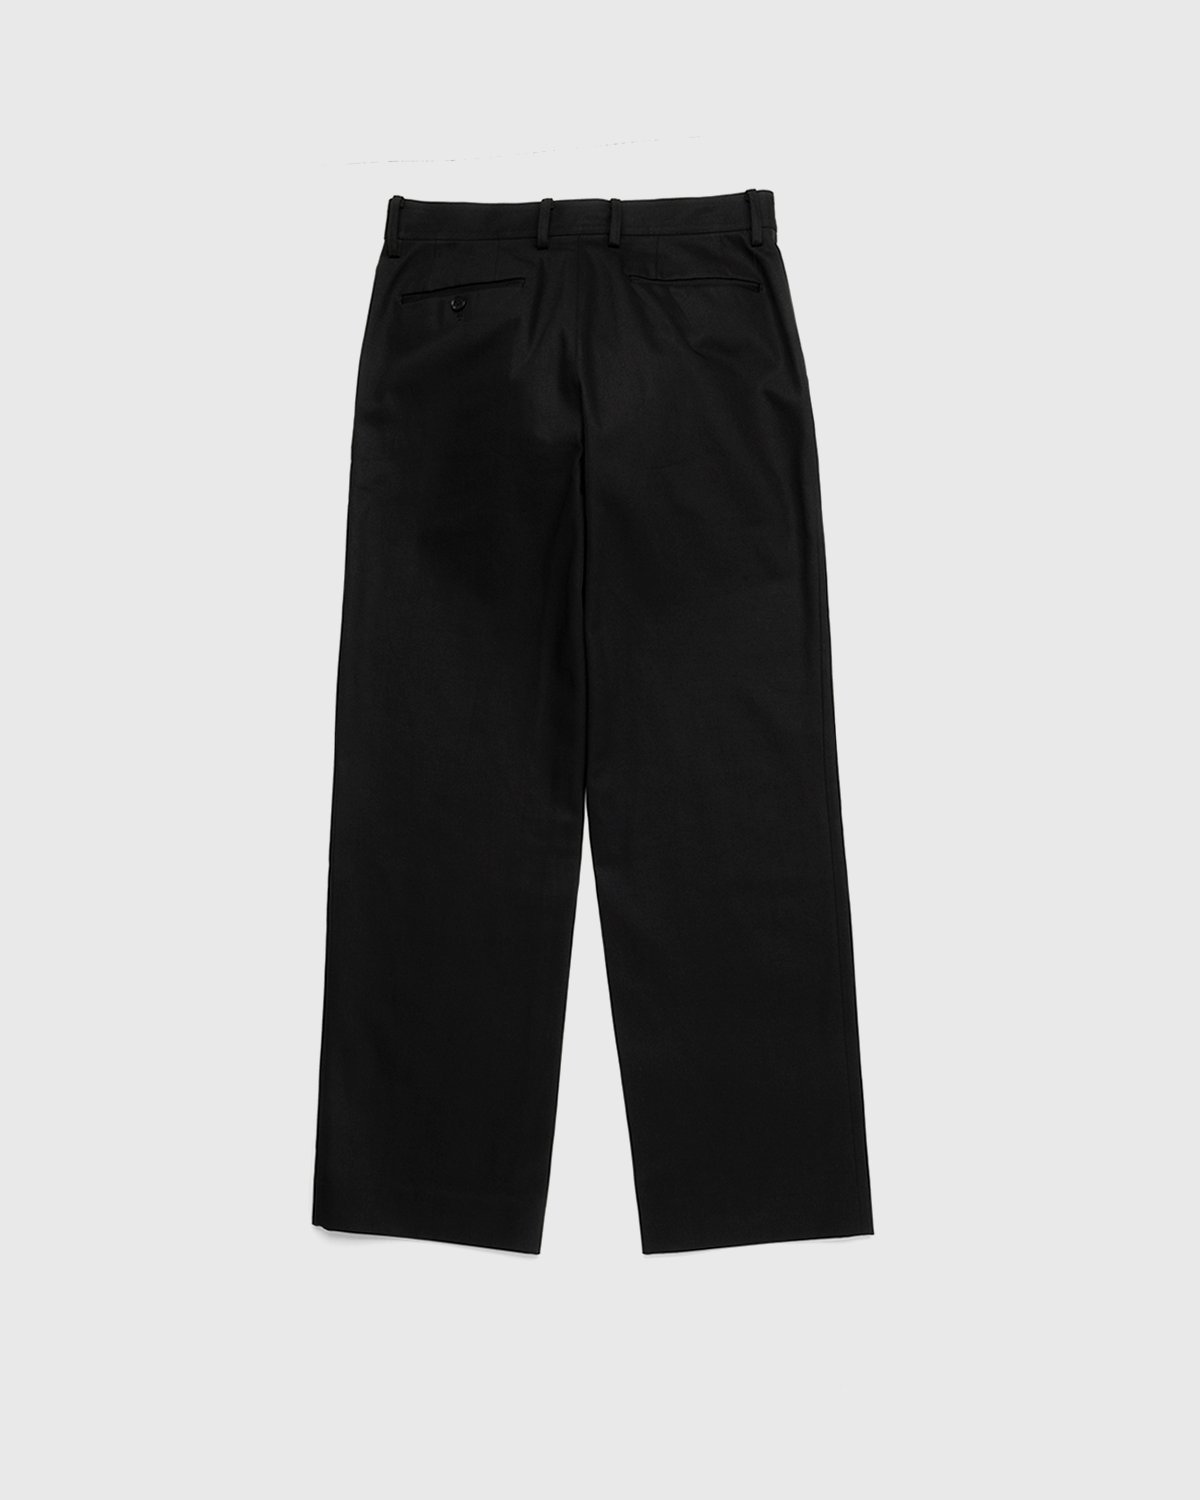 Auralee – Cotton Woven Pants Black - Trousers - Black - Image 2